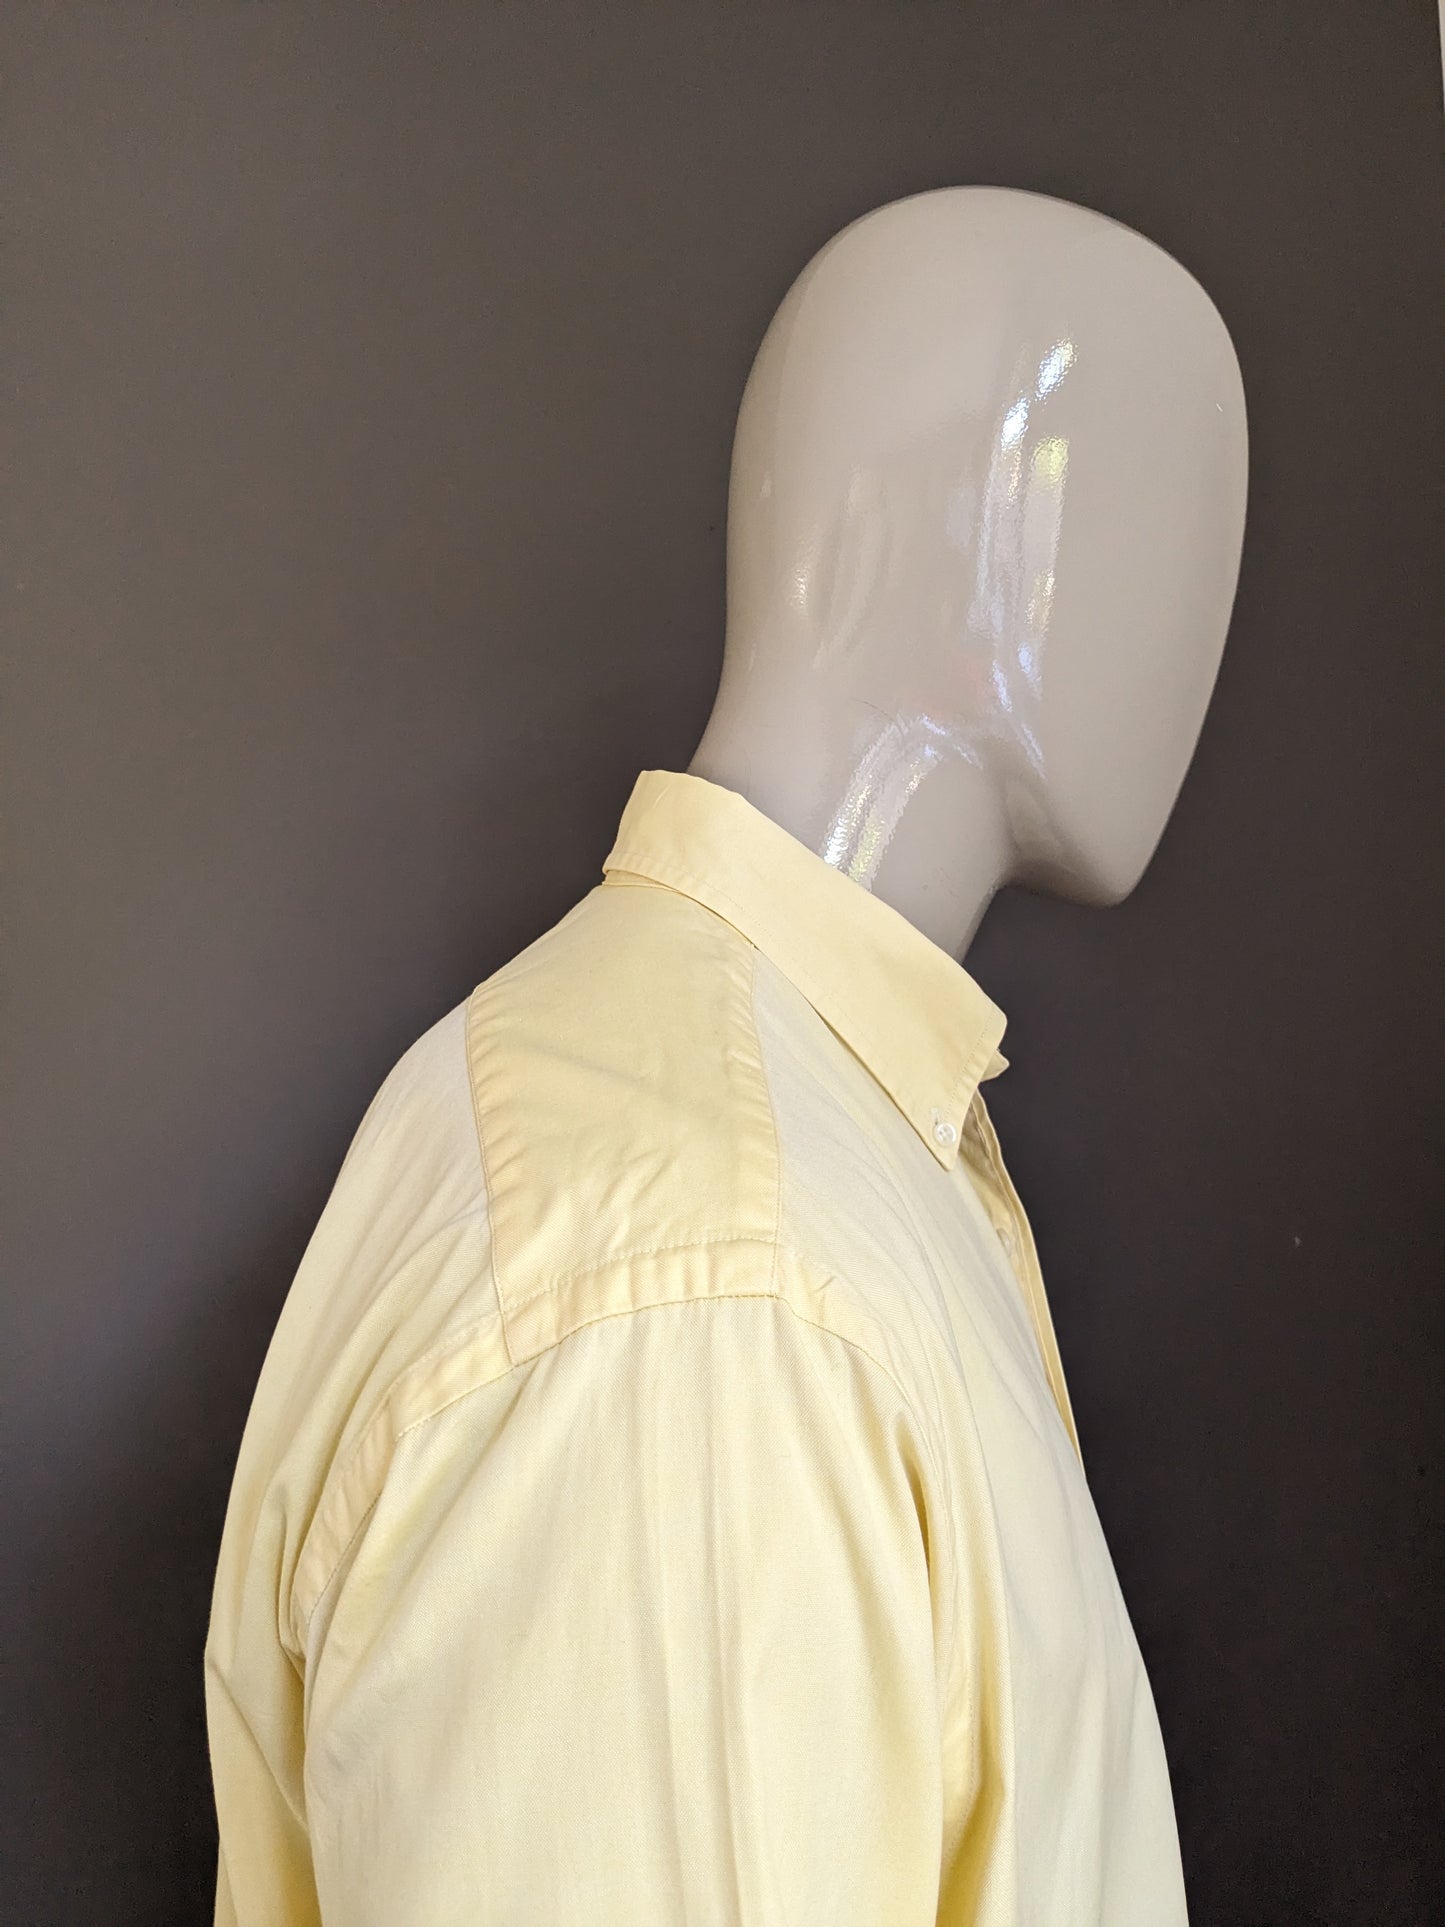 Polo von Ralph Lauren Shirt. Gelb. Yarmouth Typ. Größe 2xl / xxl.